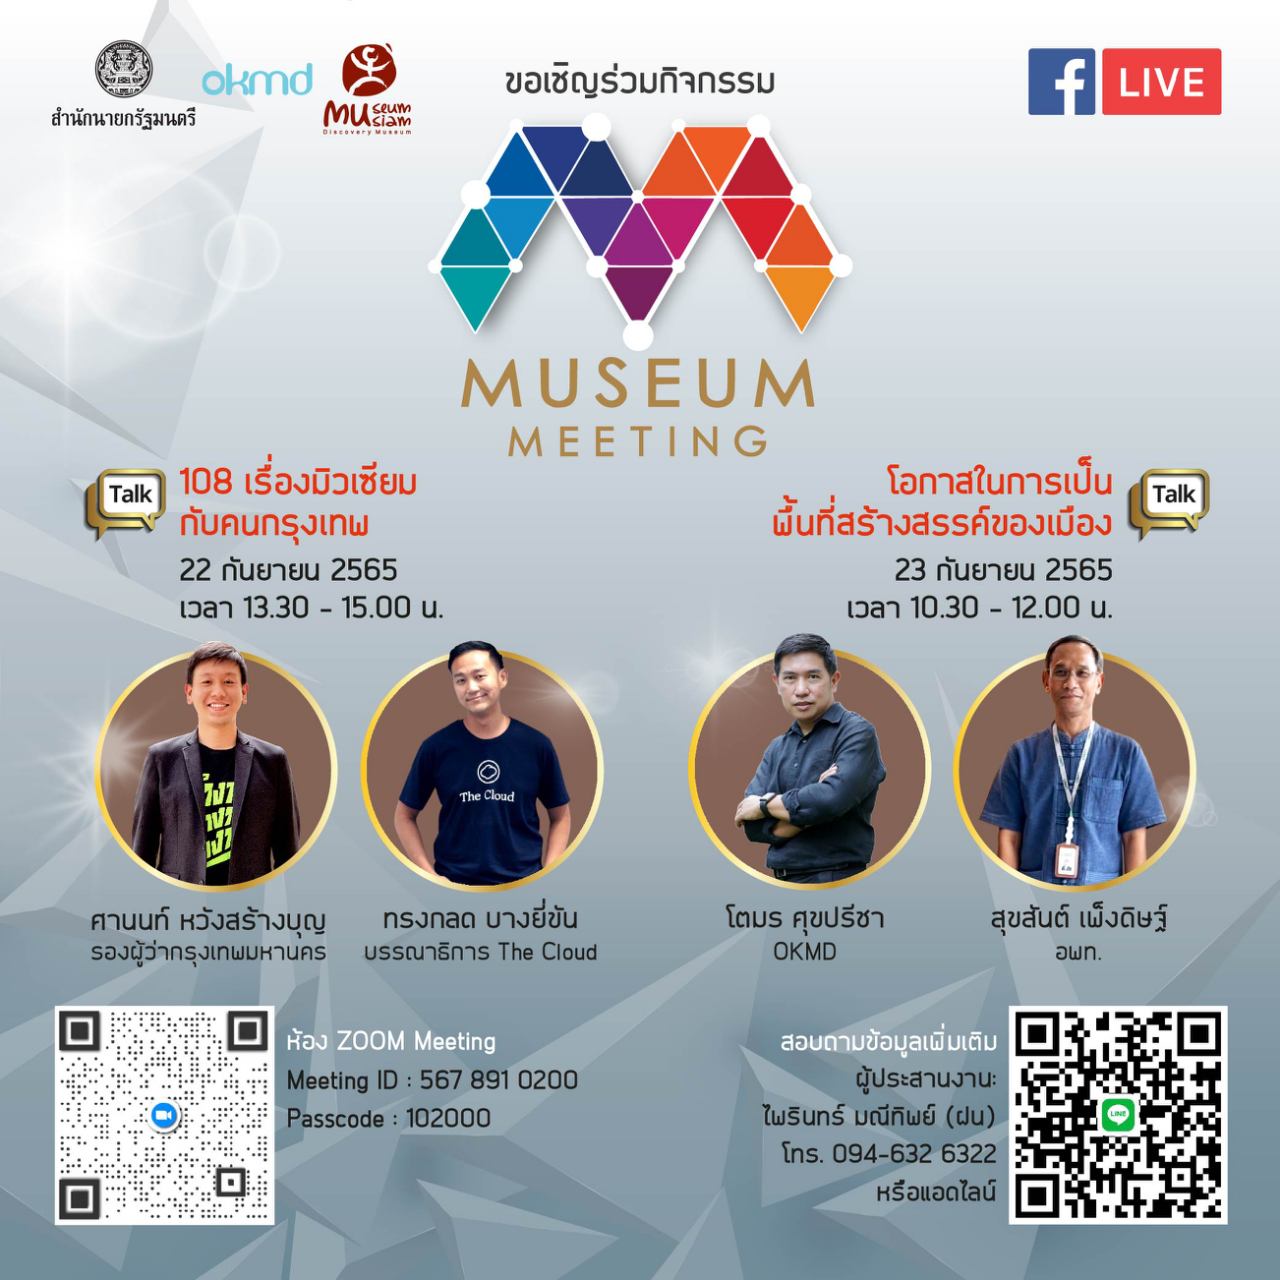 ข่าวศิลปะ, วัฒนธรรม - มิวเซียมสยาม ชวนเปิดมุมมองในงานเสวนาออนไลน์ Museum Meeting 2022 ร่วมสร้างสรรค์ให้พิพิธภัณฑ์สนุกกว่าที่คิด ผ่าน Museum Thailand Platform